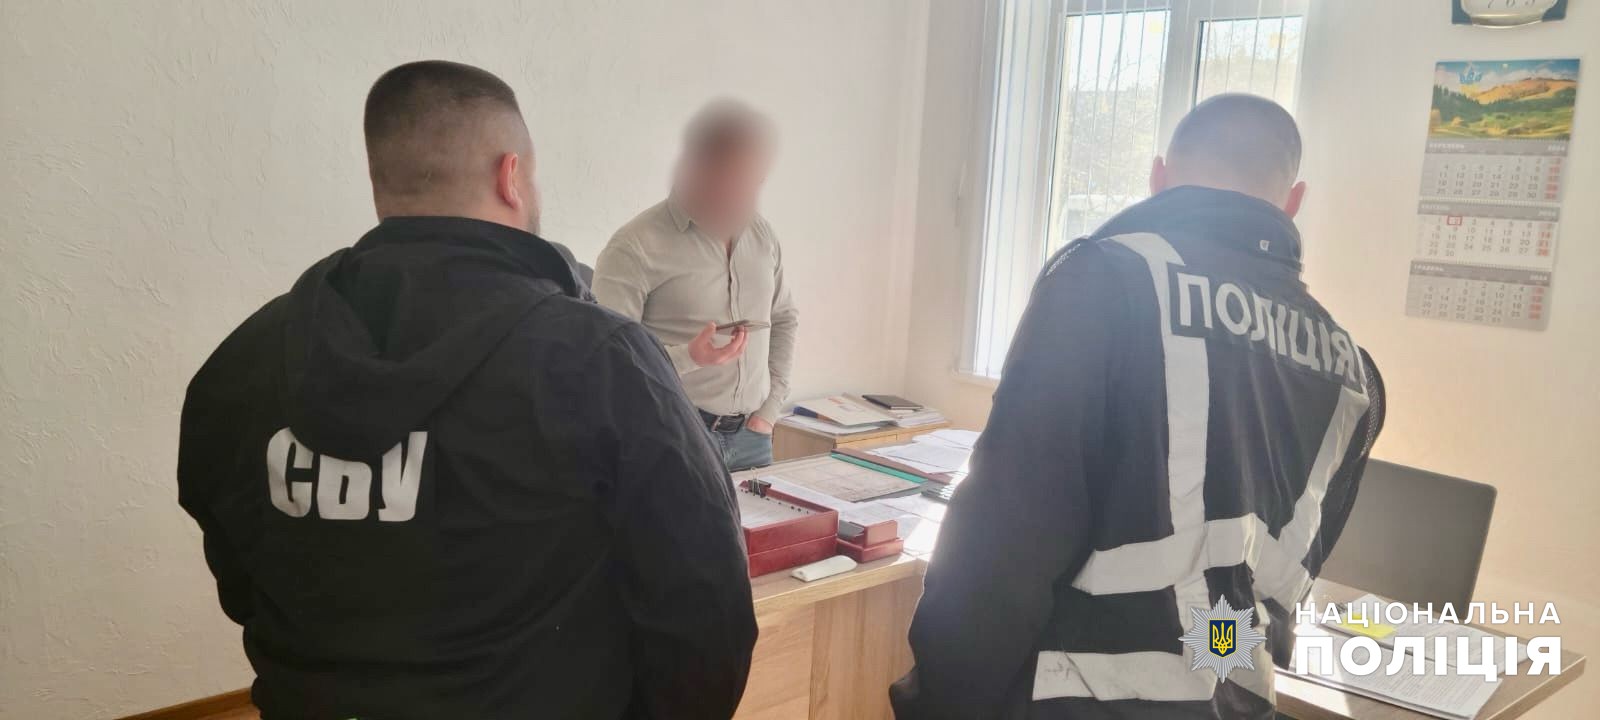 В Белгород-Днестровском районе руководитель коммунального предприятия заработал миллион на фиктивных рабочих